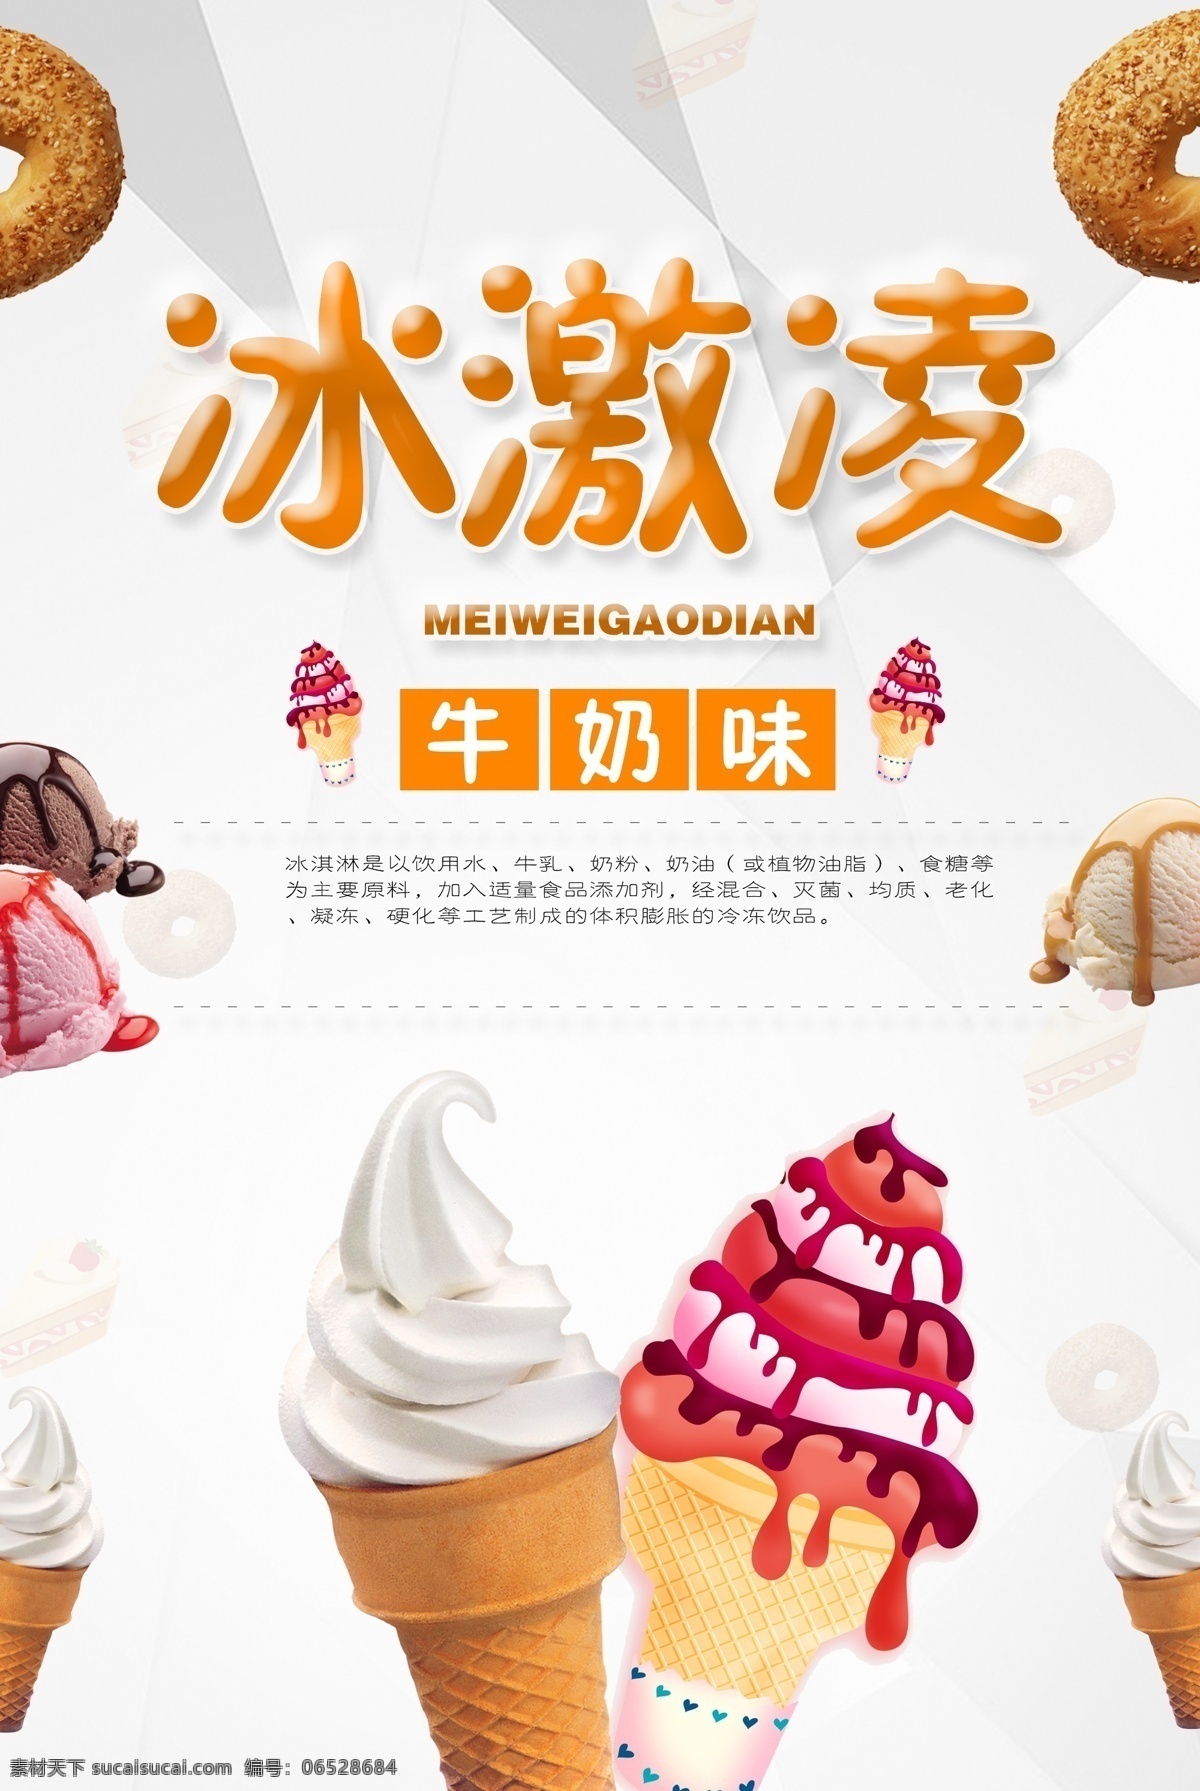 冰激凌 冰淇淋 冷饮 夏日饮品 冷饮海报 冰糕 甜品 夏日甜品 海报